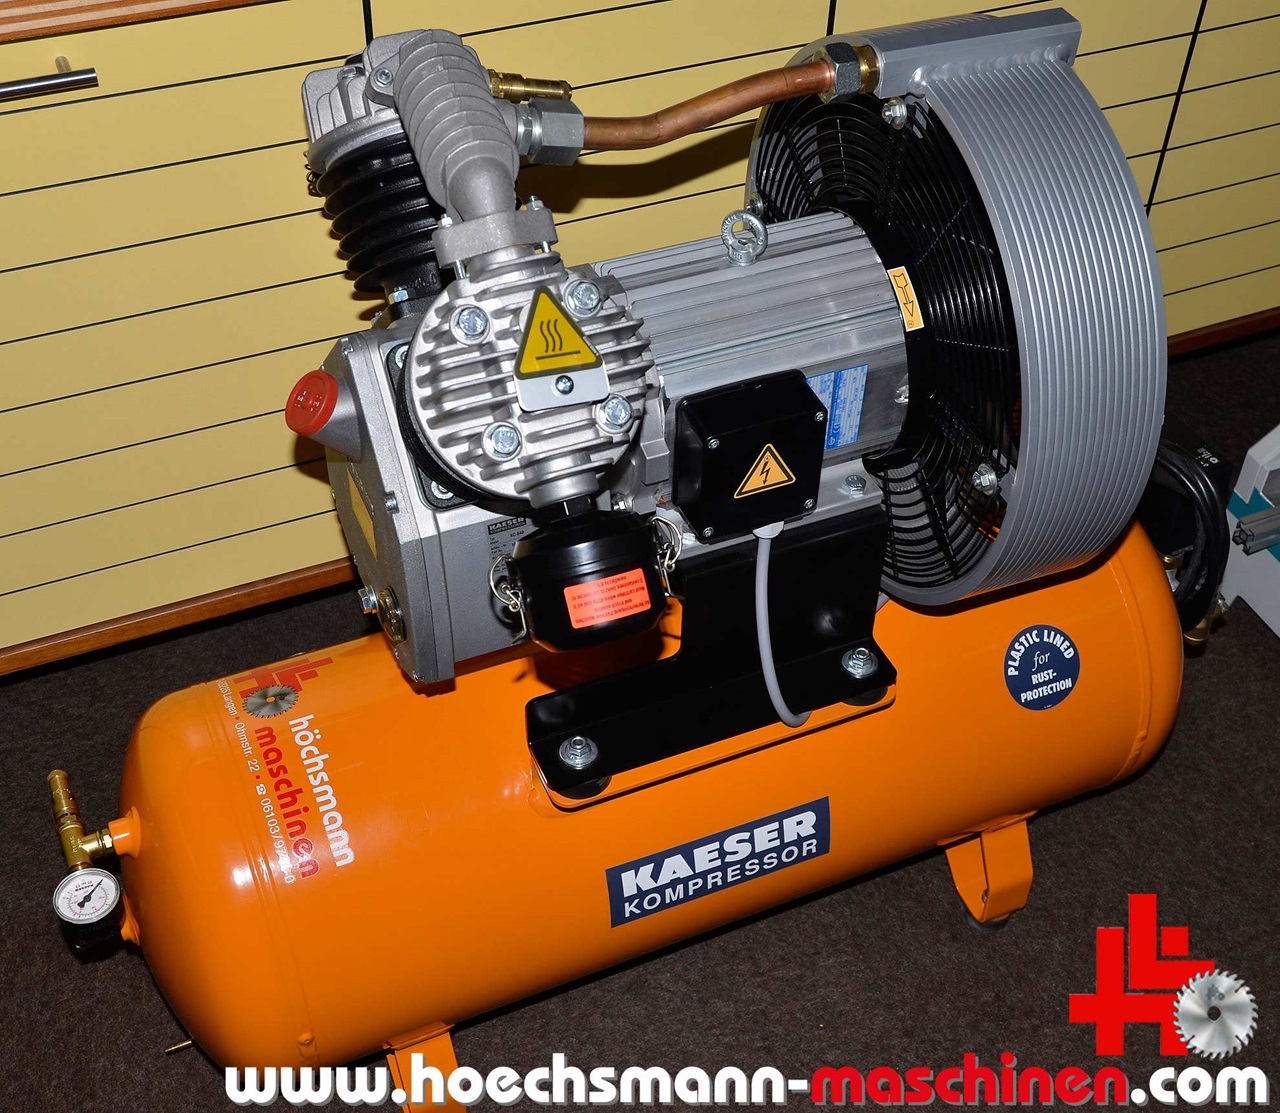 KAESER Kompressor KC 840, Holzbearbeitungsmaschinen Hessen Höchsmann